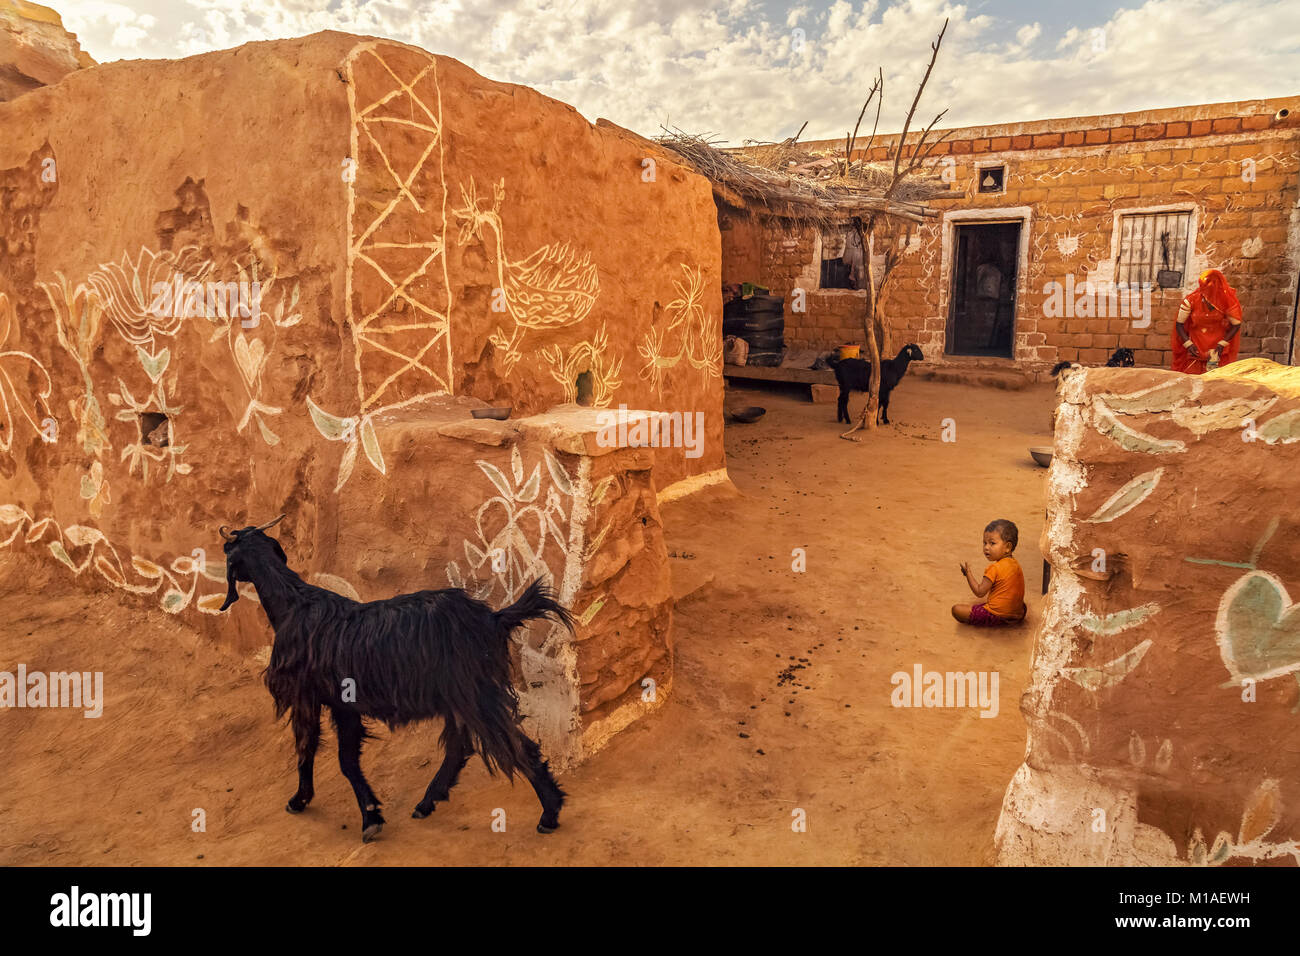 Il villaggio di Rajasthani vicino al deserto di Thar Jaisalmer con mattoni di fango villaggio di case di capre e un bambino. Foto Stock